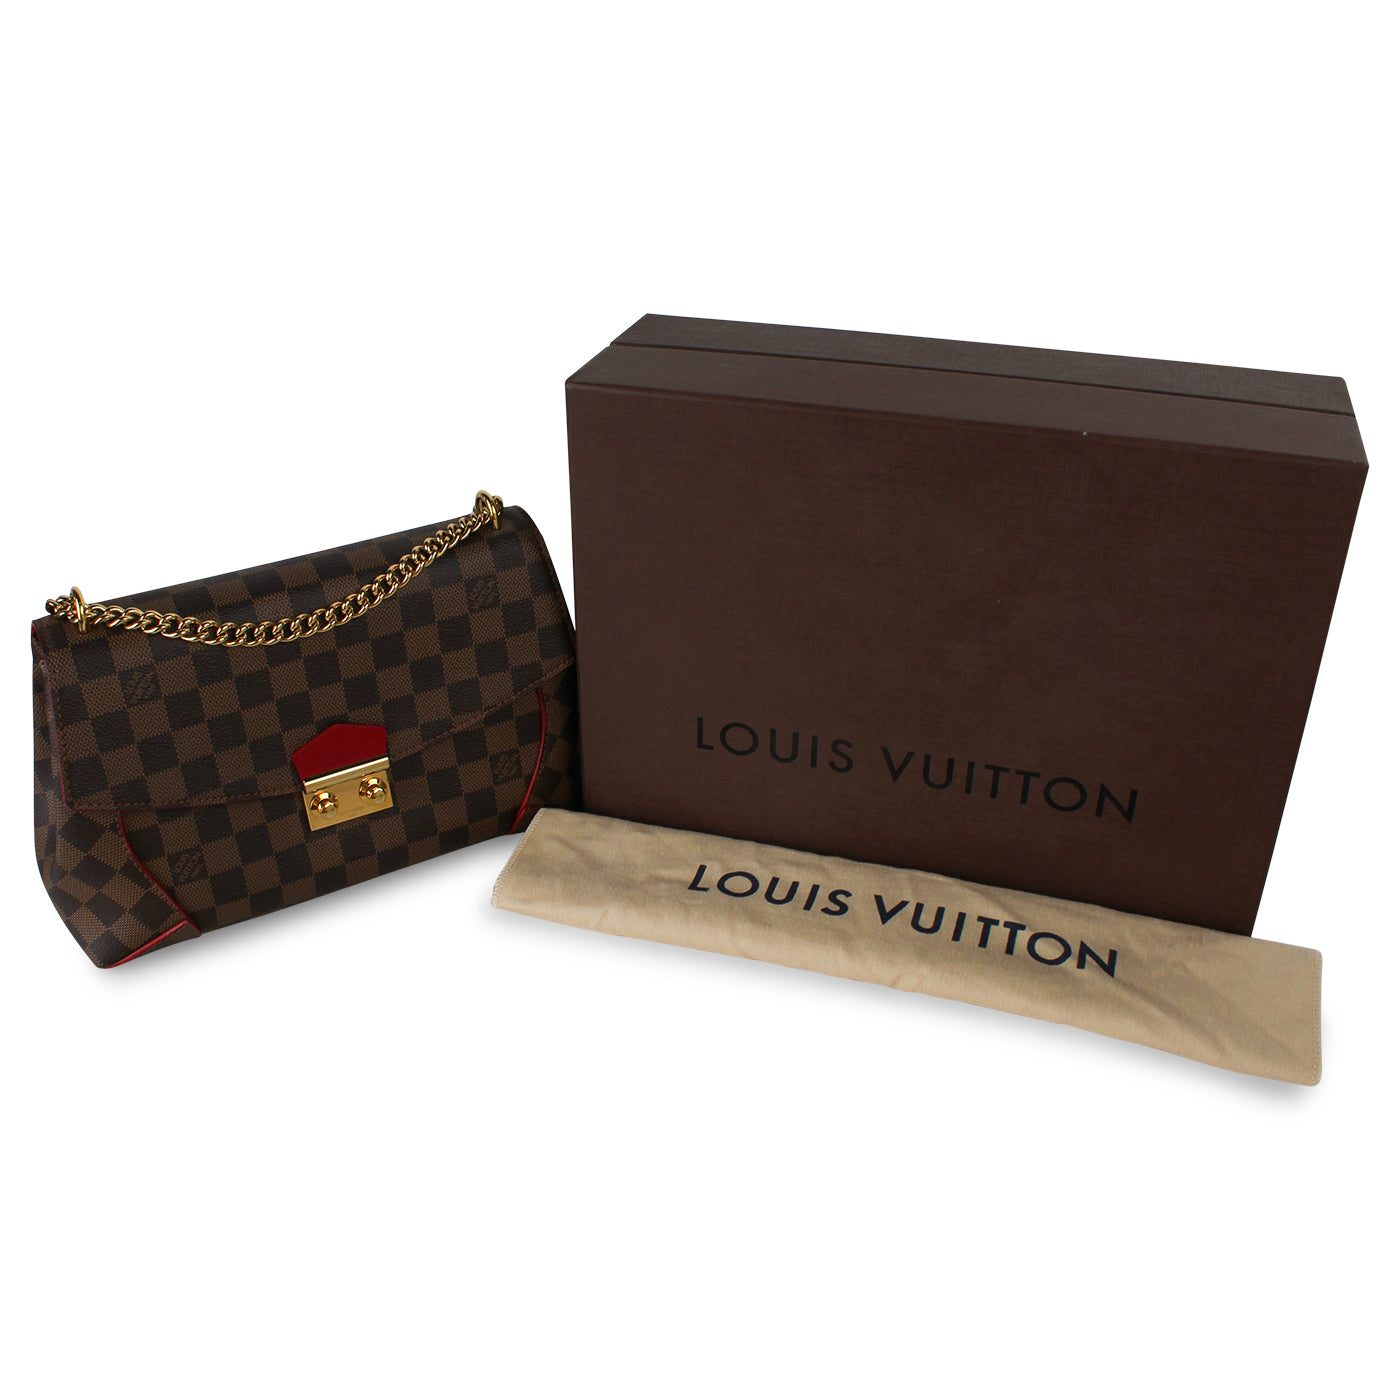 Louis Vuitton Caissa Clutch With Chain, Bragmybag